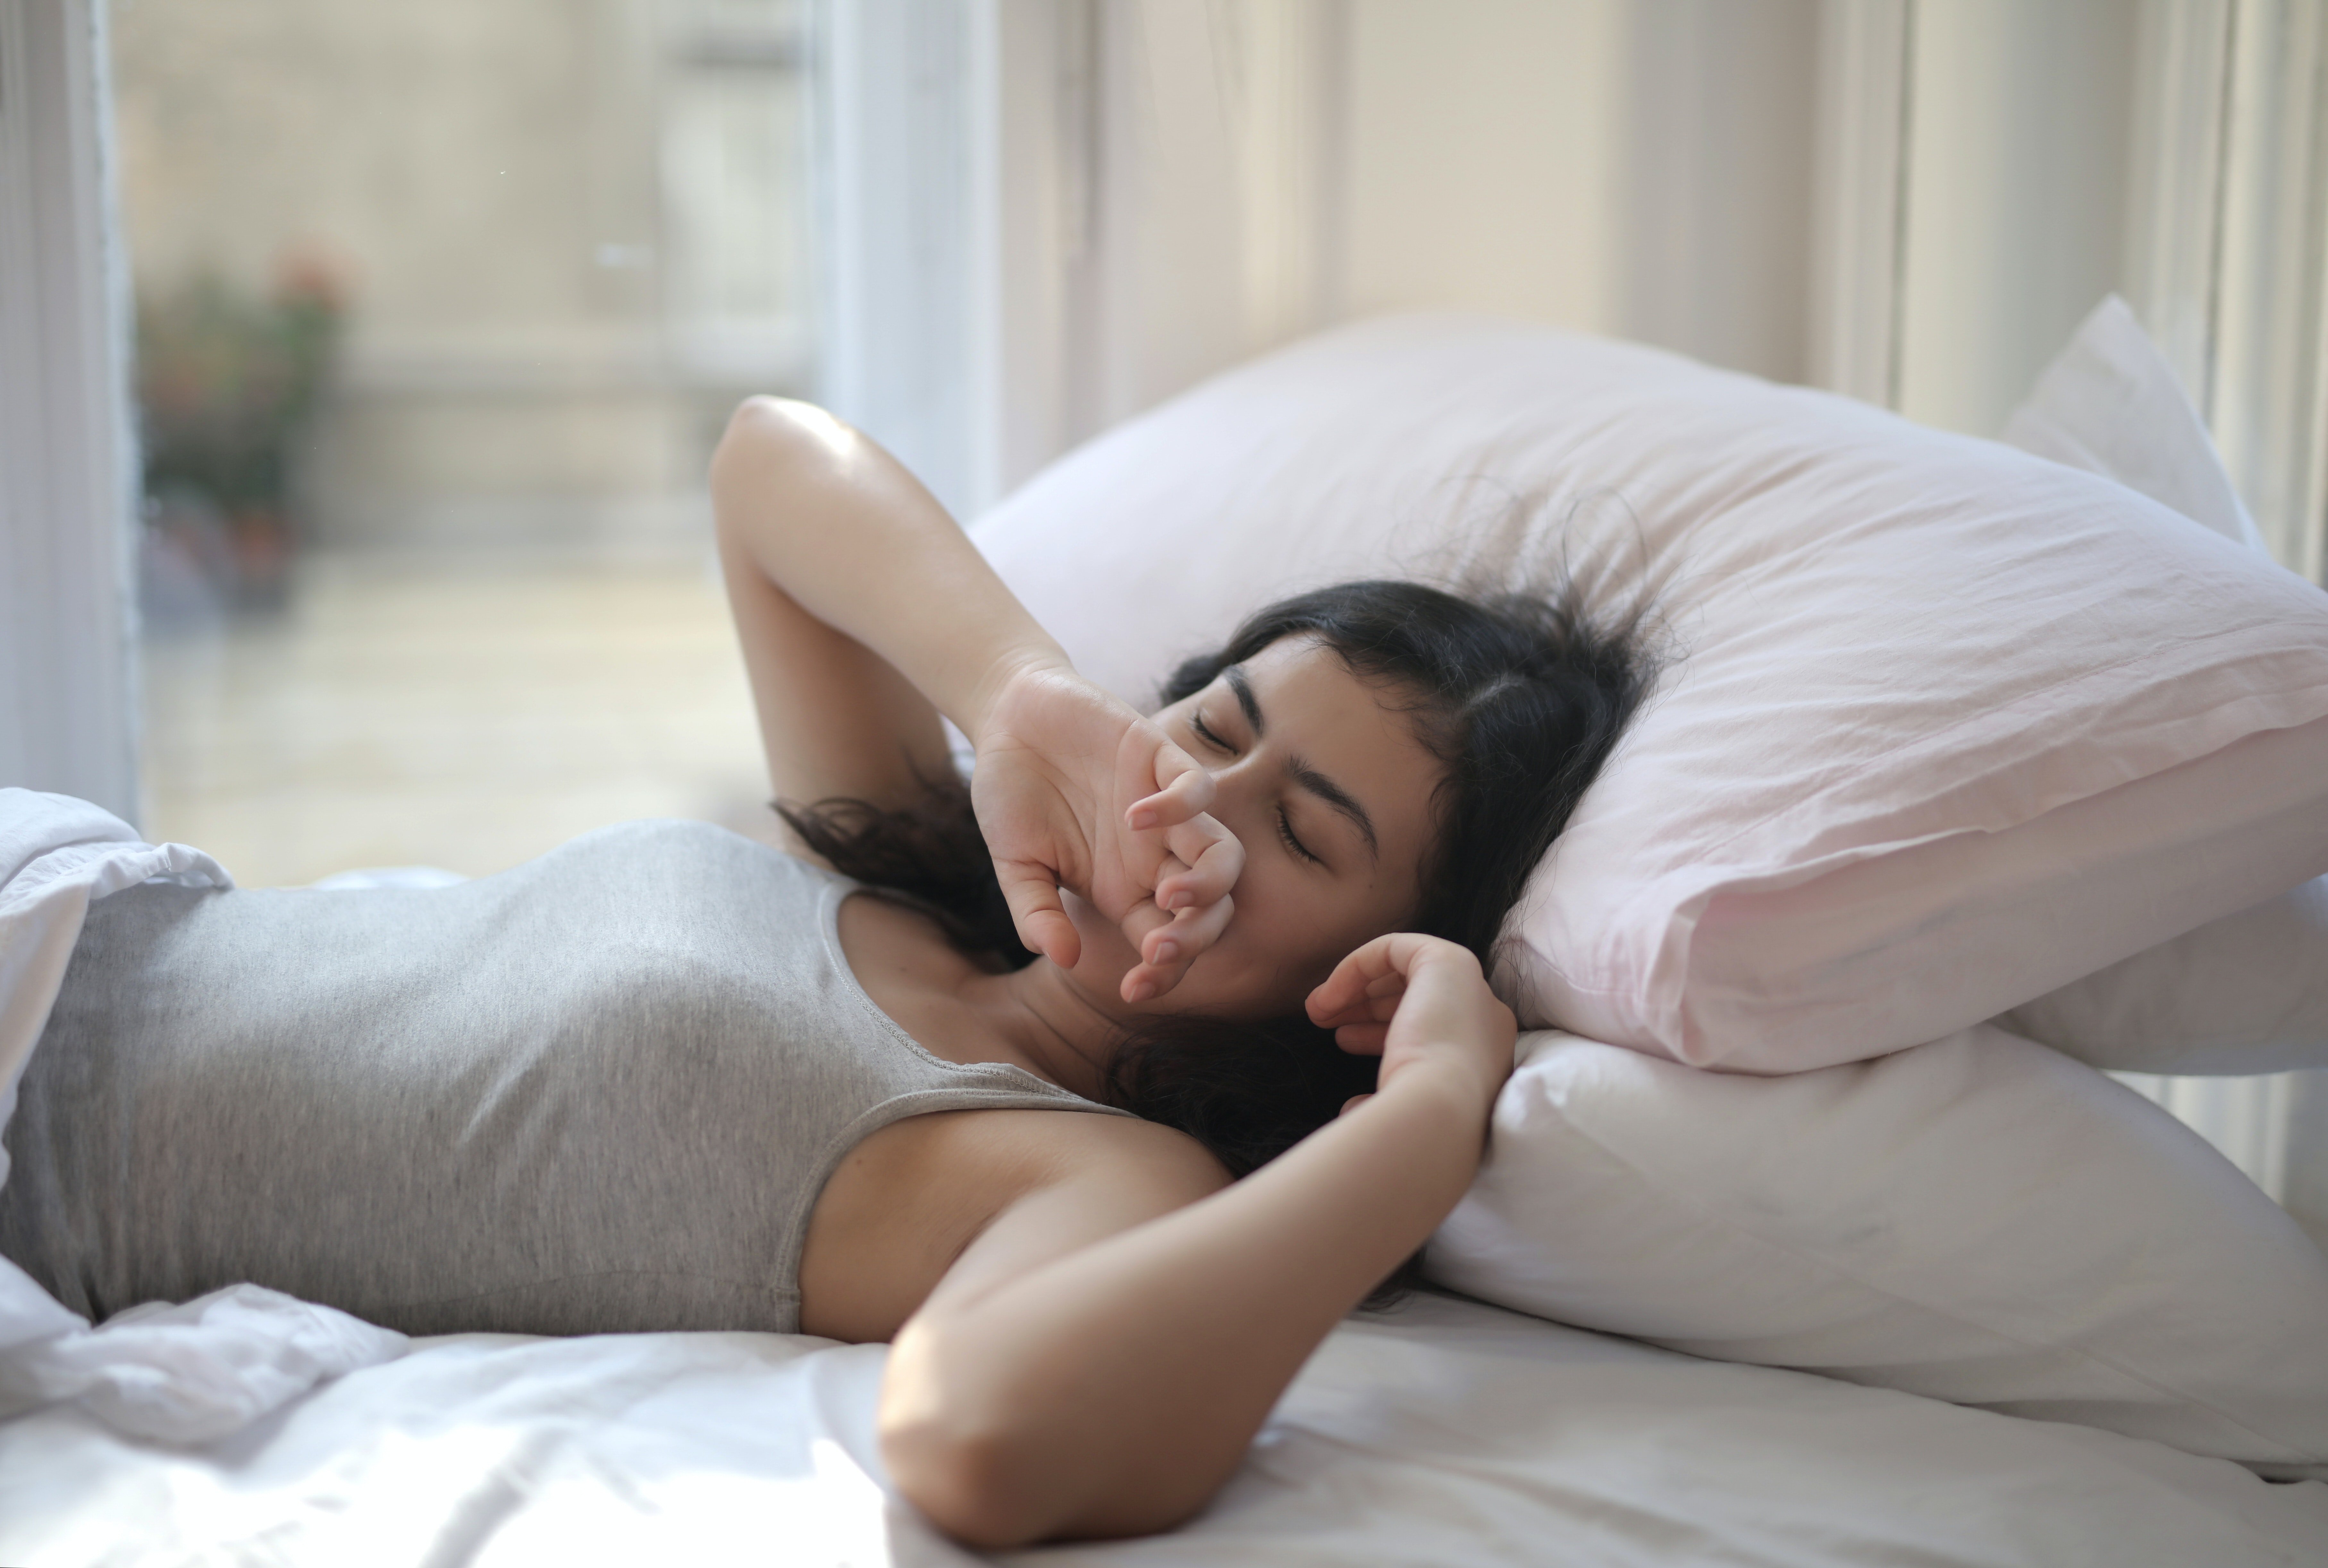 Sleepy woman in grey tank top lying on bed | Photo: Pexels